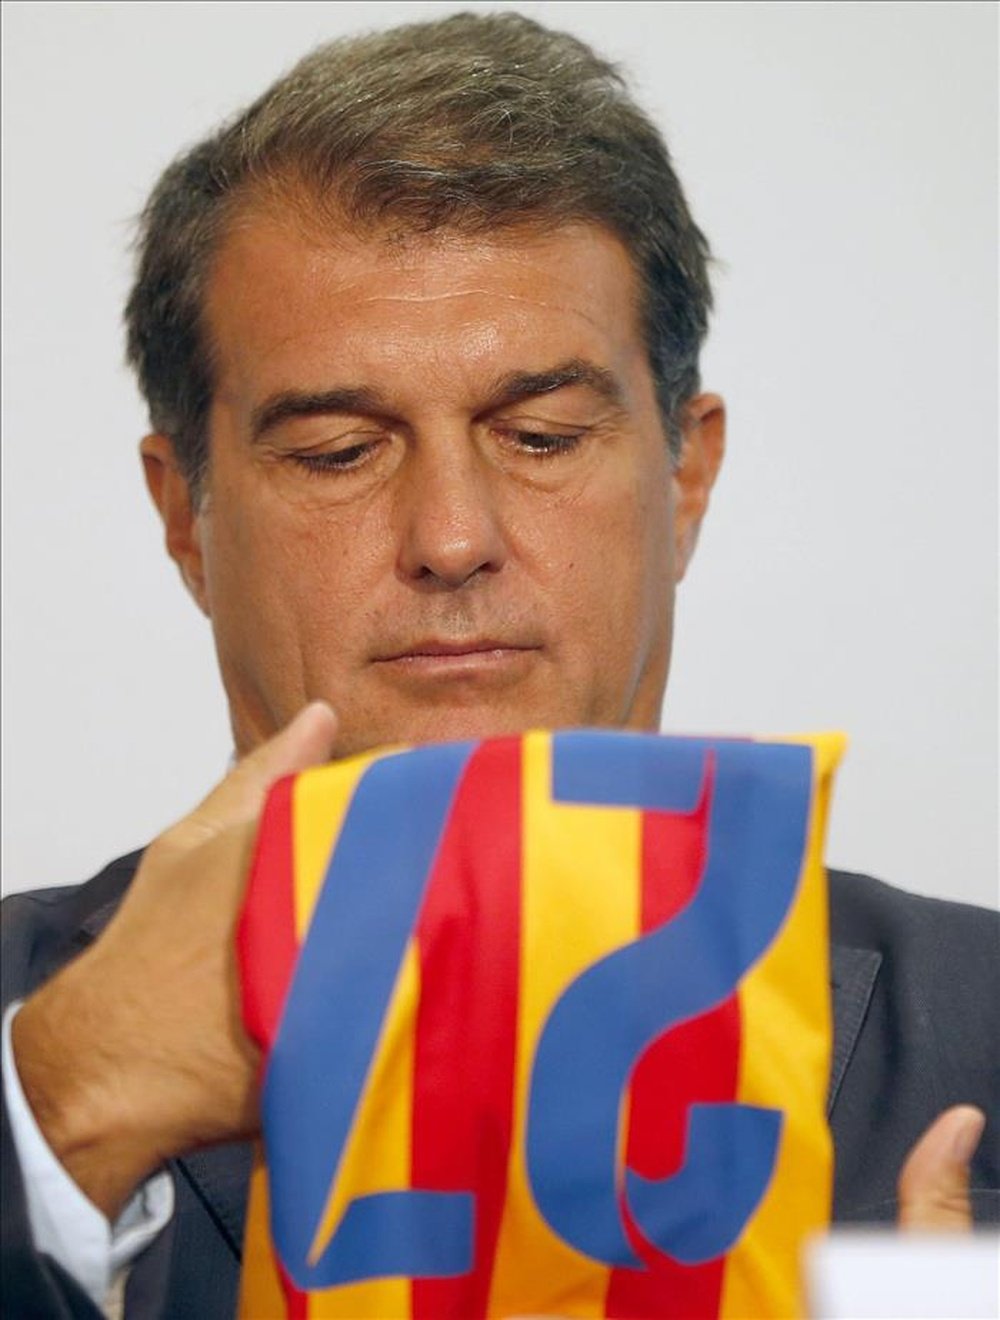 El candidato a la presidencia del FC Barcelona, Joan Laporta. EFE